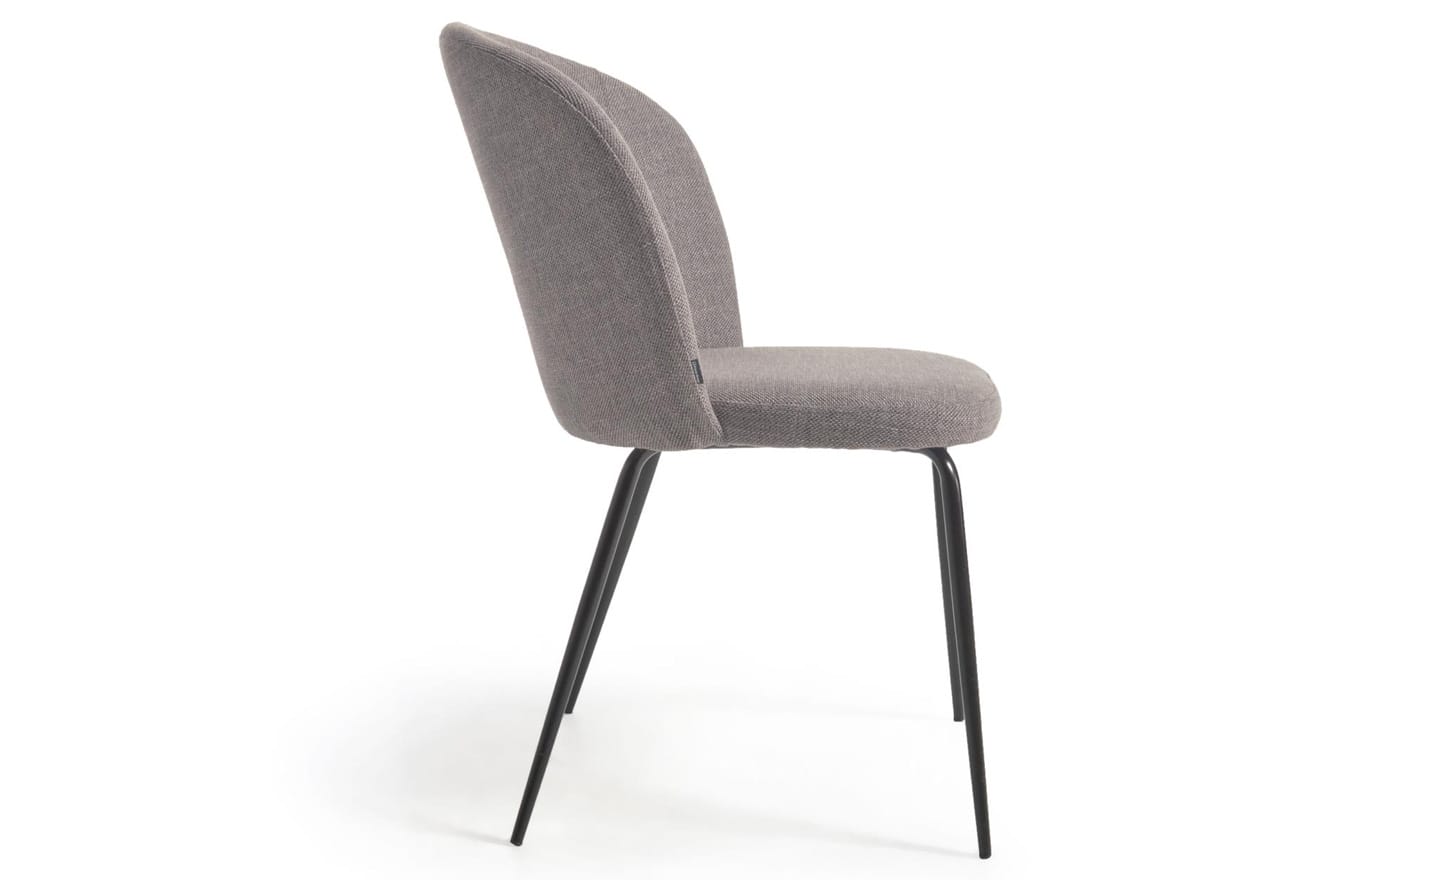 Cadeira Anoha Cinza, estofada com tecido chenille repelente à água na cor cinza. Estrutura de metal preto mate para um design moderno.